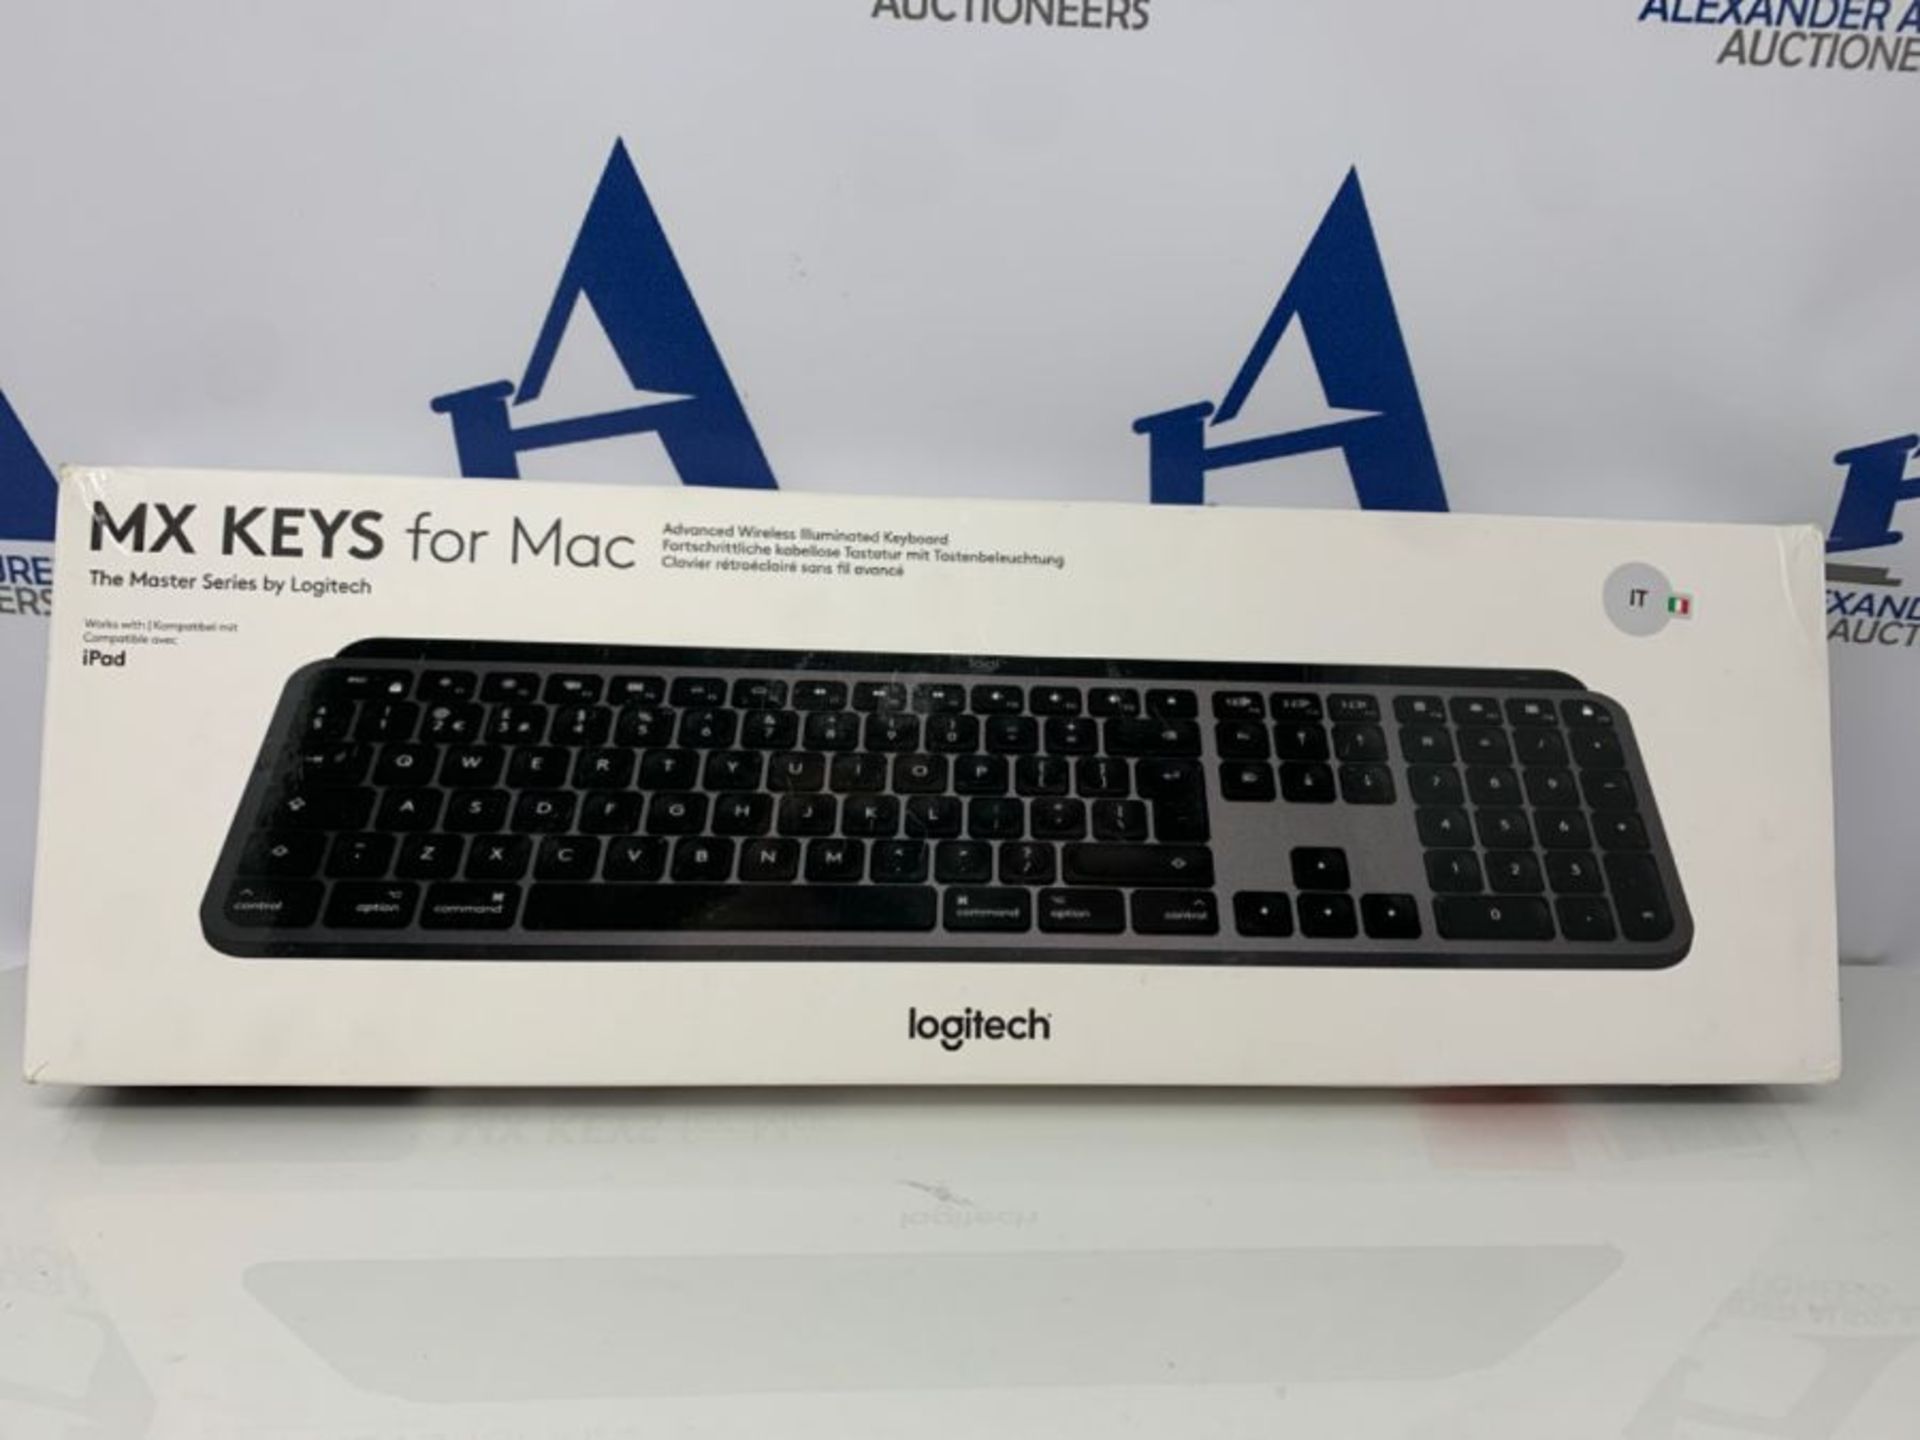 RRP £82.00 [INCOMPLETE] Logitech MX Keys Tastiera Wireless Illuminata Avanzata Per Mac, Layout It - Image 2 of 3